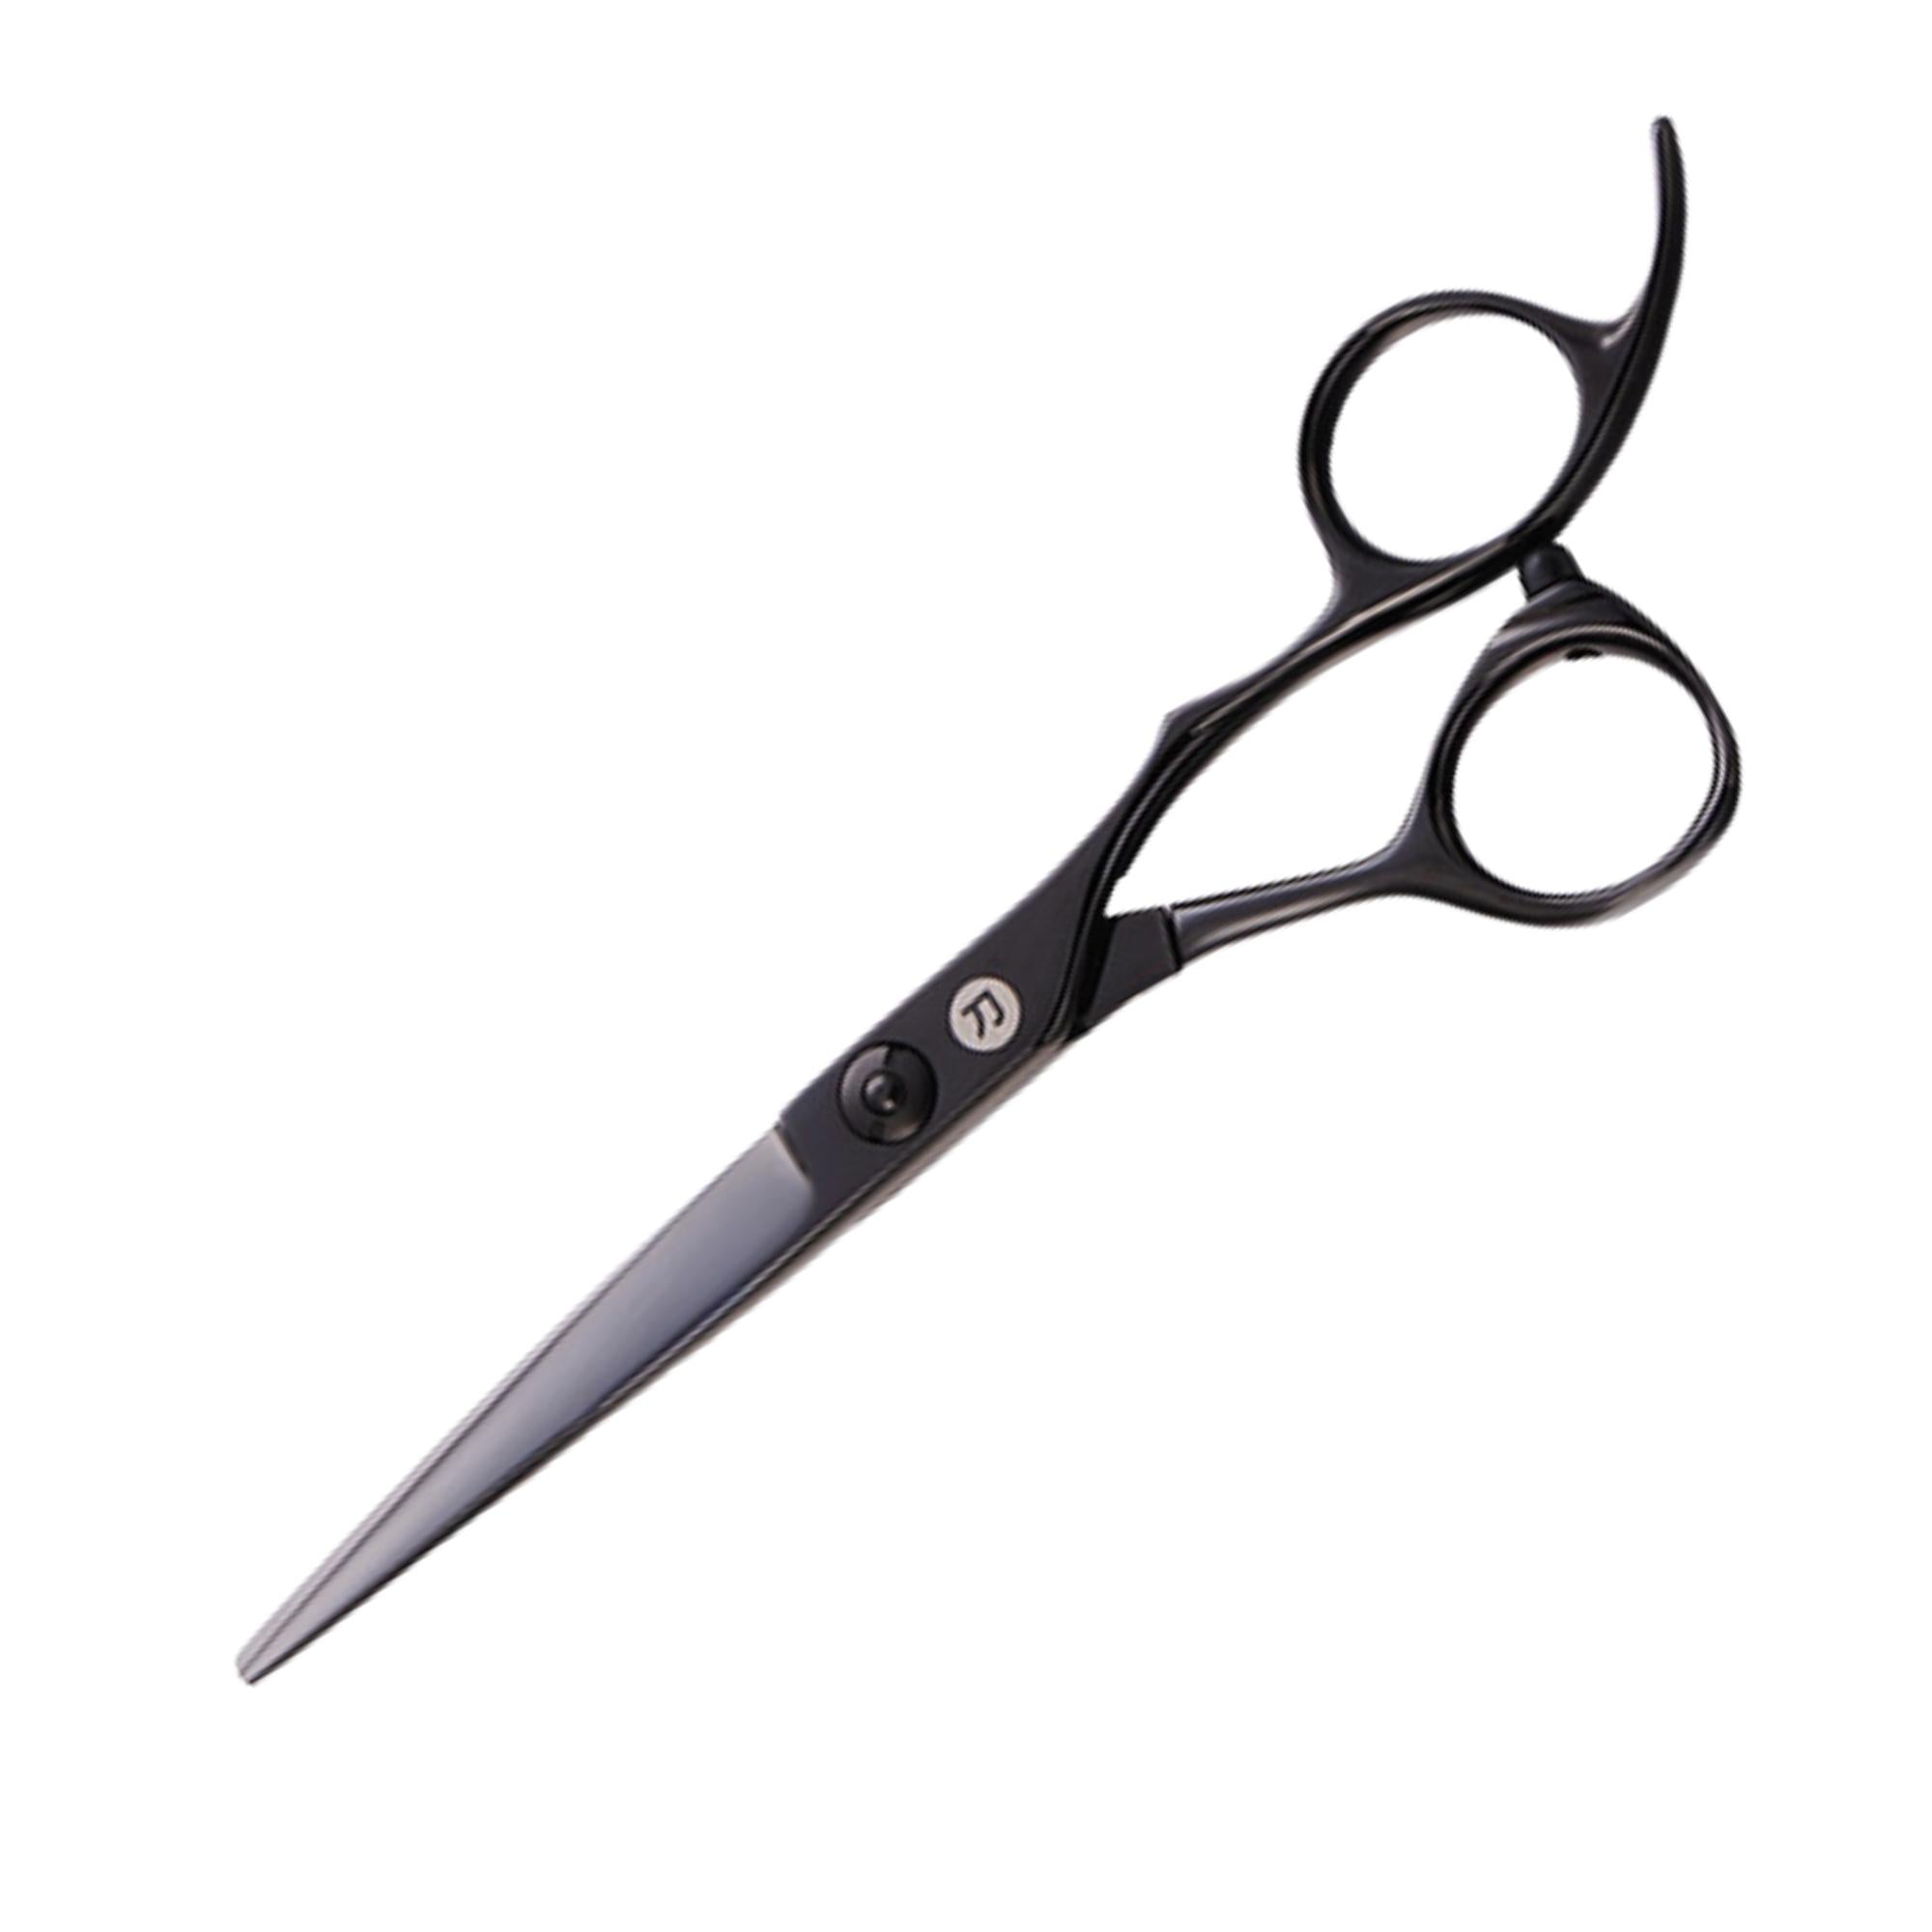 Katana Japanese Hair Cutting Shears/Scissors